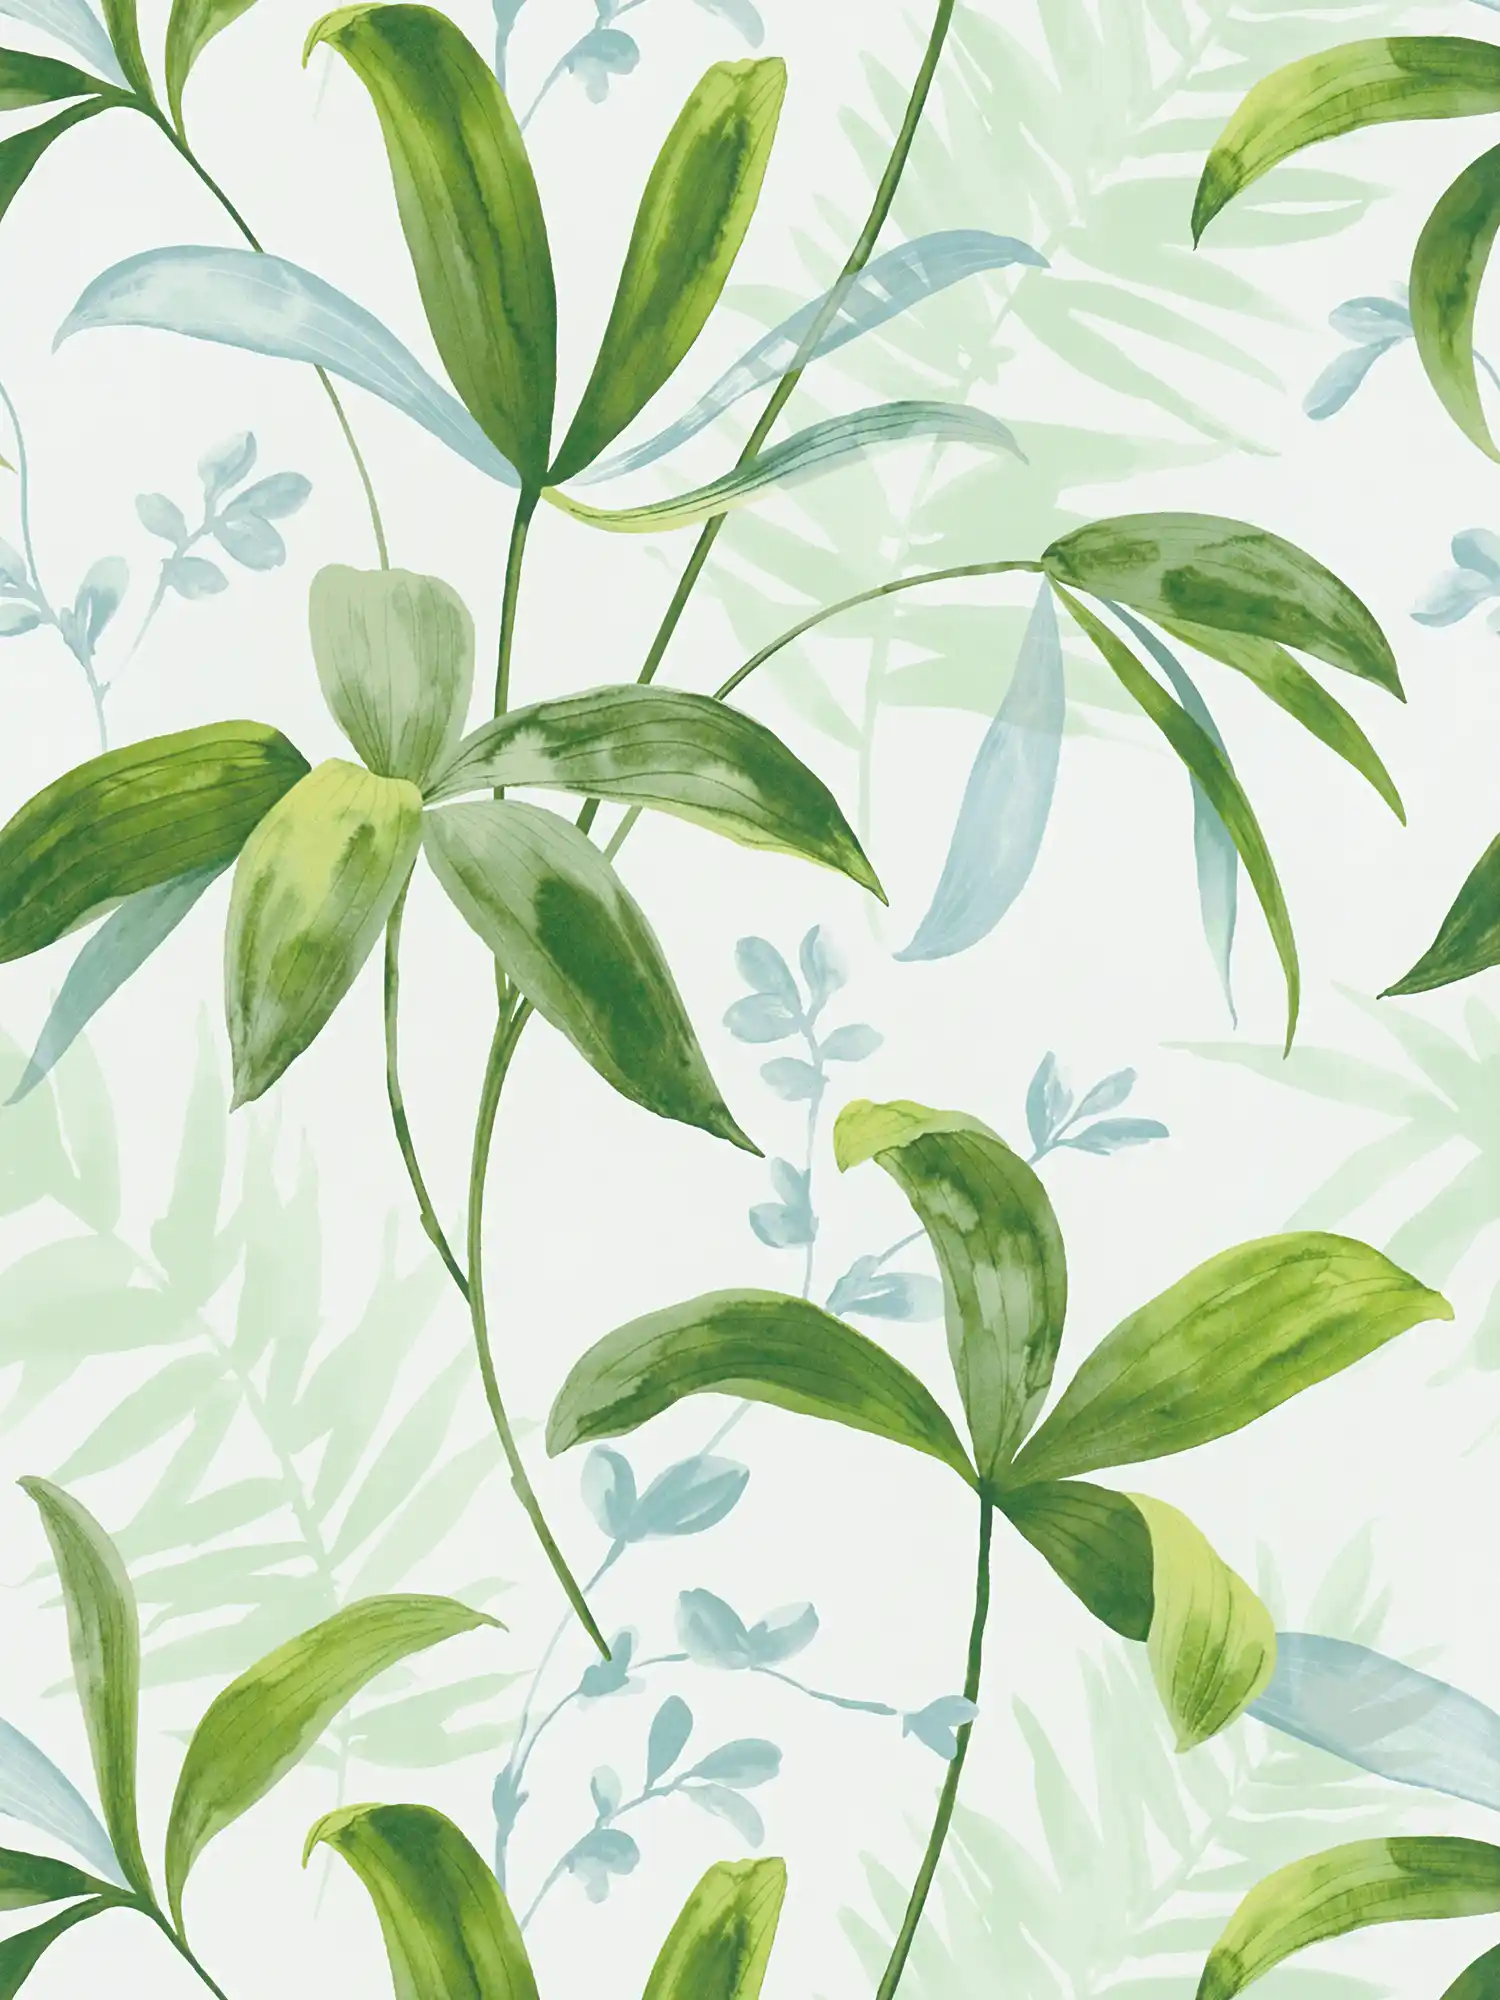 Vliesbehang groene bladeren in aquarelstijl - groen, wit
